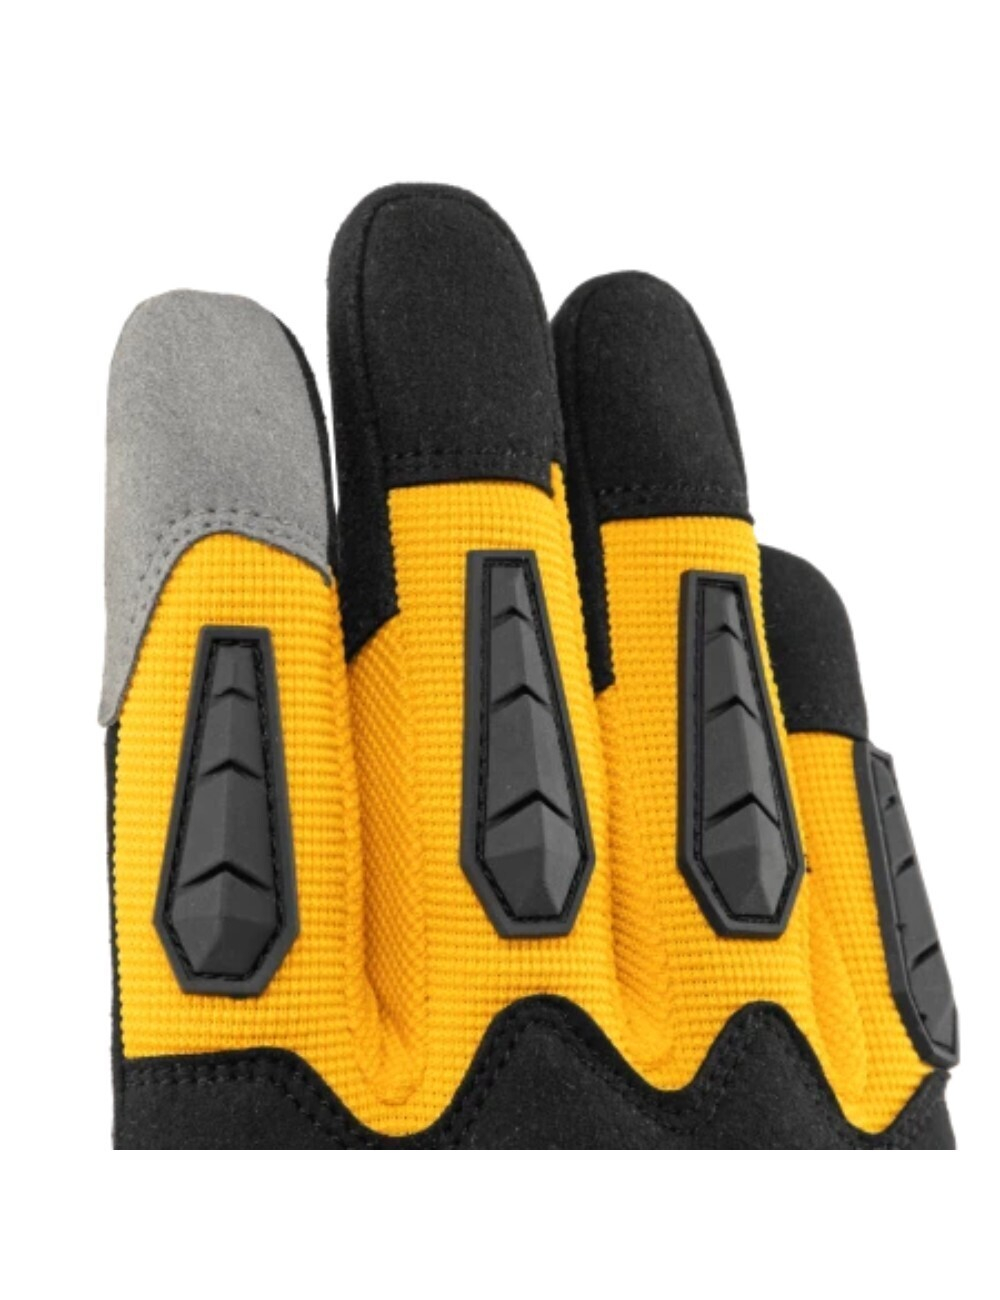 Перчатки Denzel универсальные, усиленные, с защитными накладками, размер 10